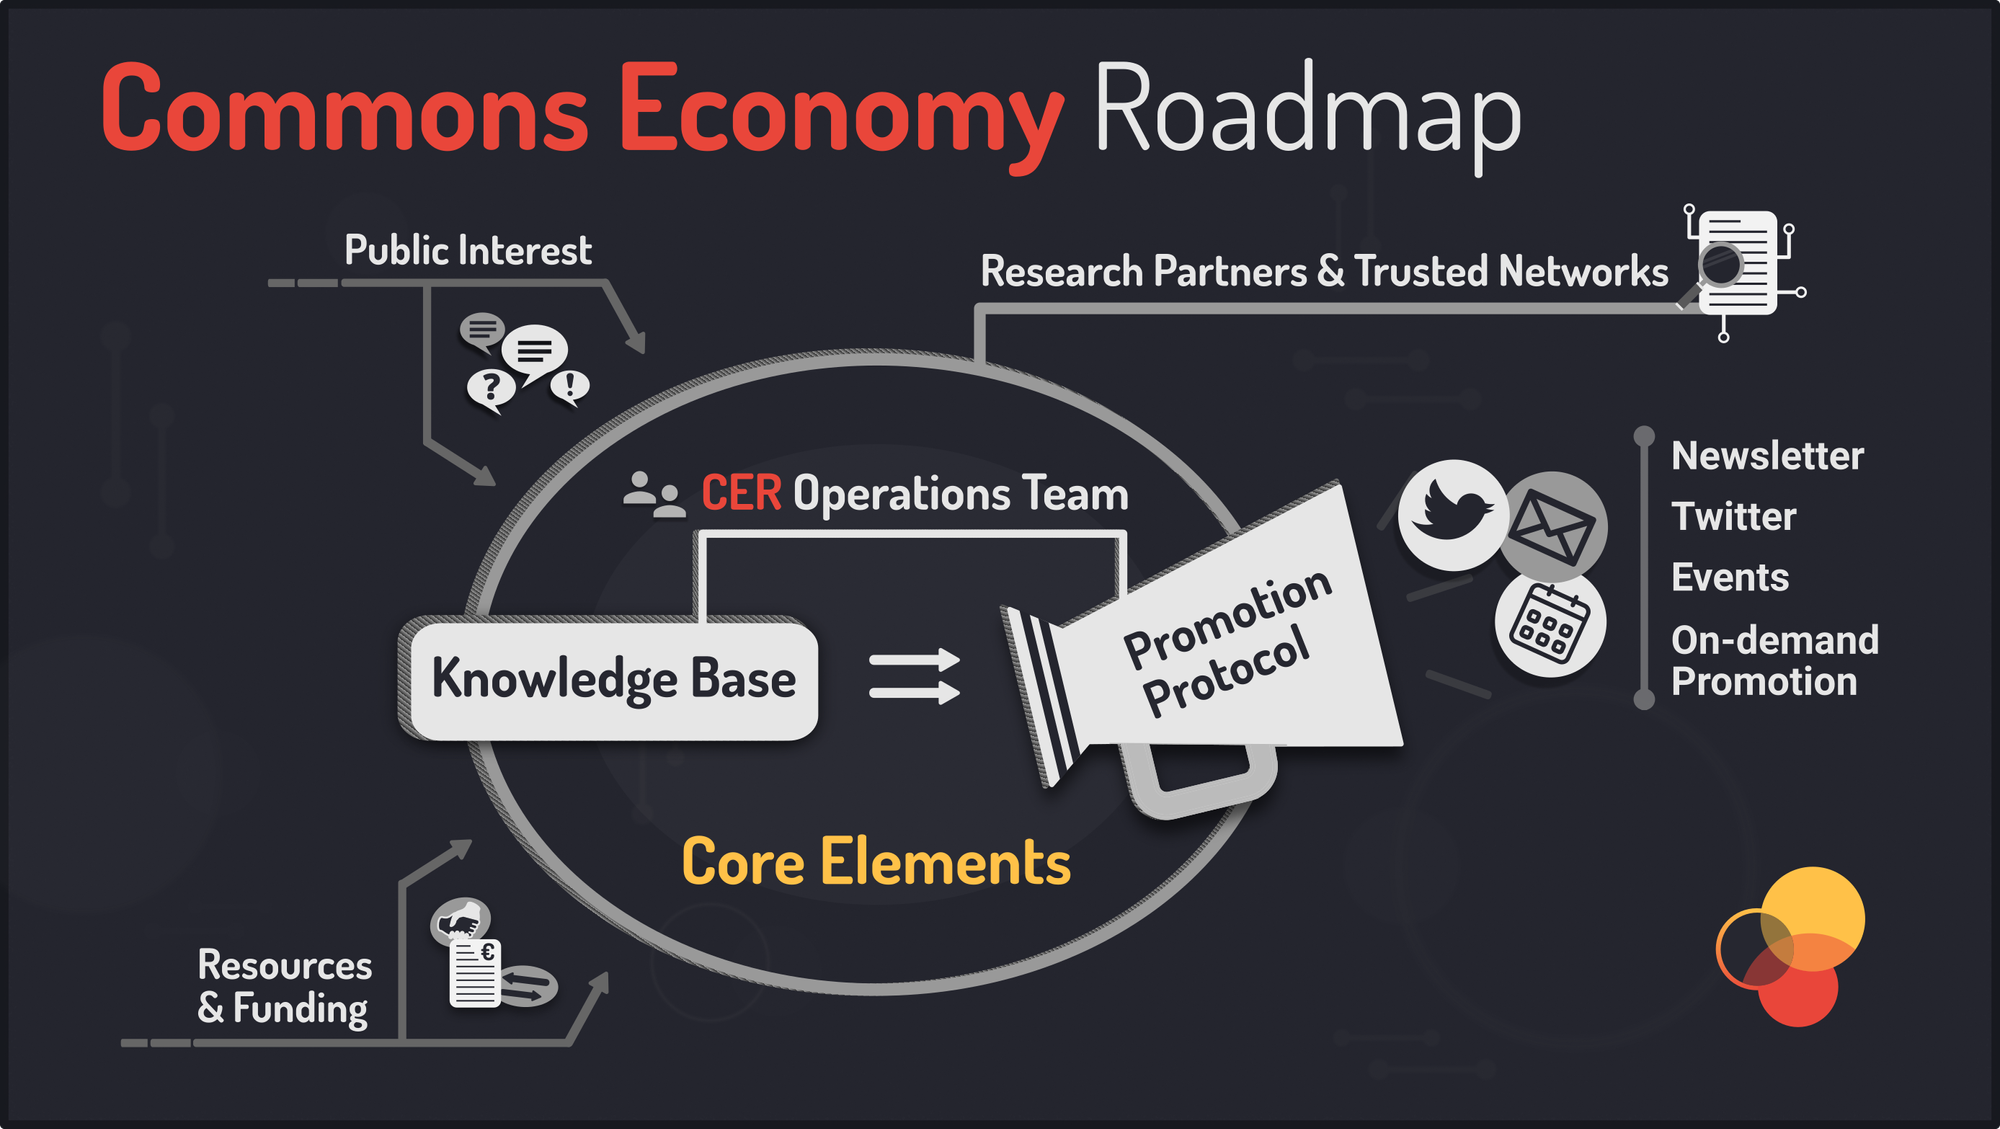 Commons Economy Roadmap core elements